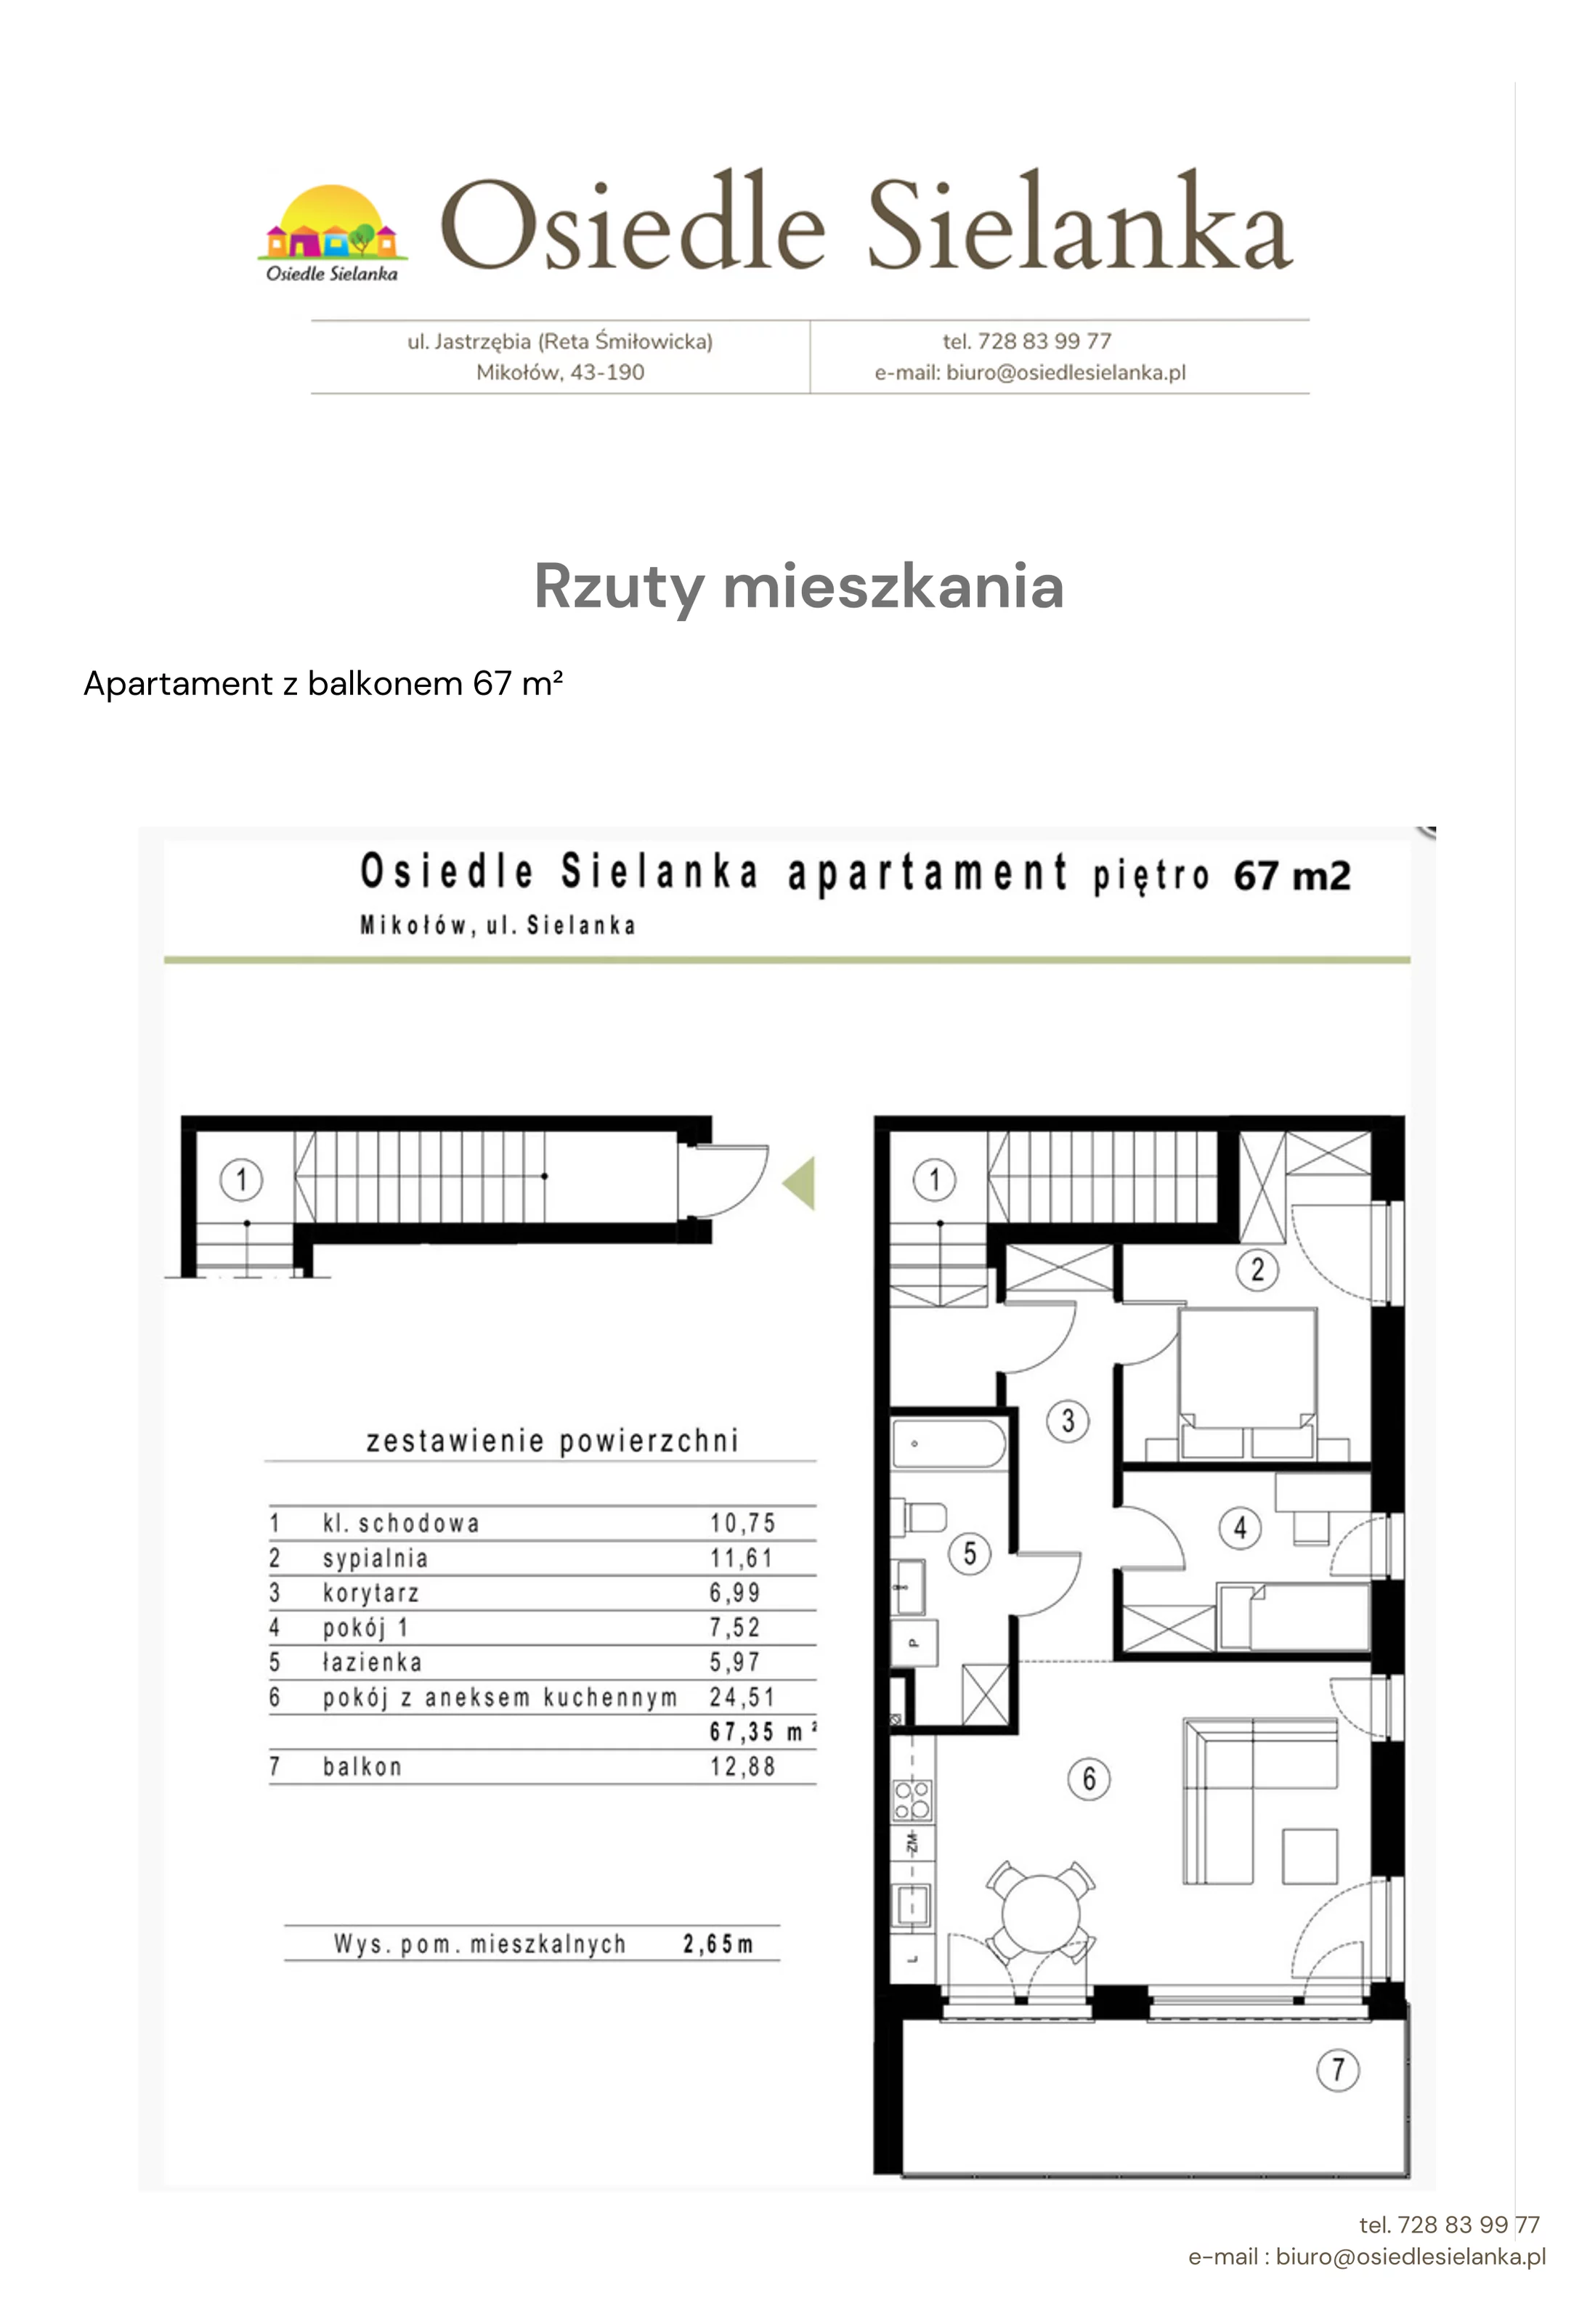 Apartament 79,00 m², piętro 1, oferta nr apartament z balkonem 2 pok., Osiedle Sielanka Mikołów, Mikołów, Reta, ul. Jastrzębia